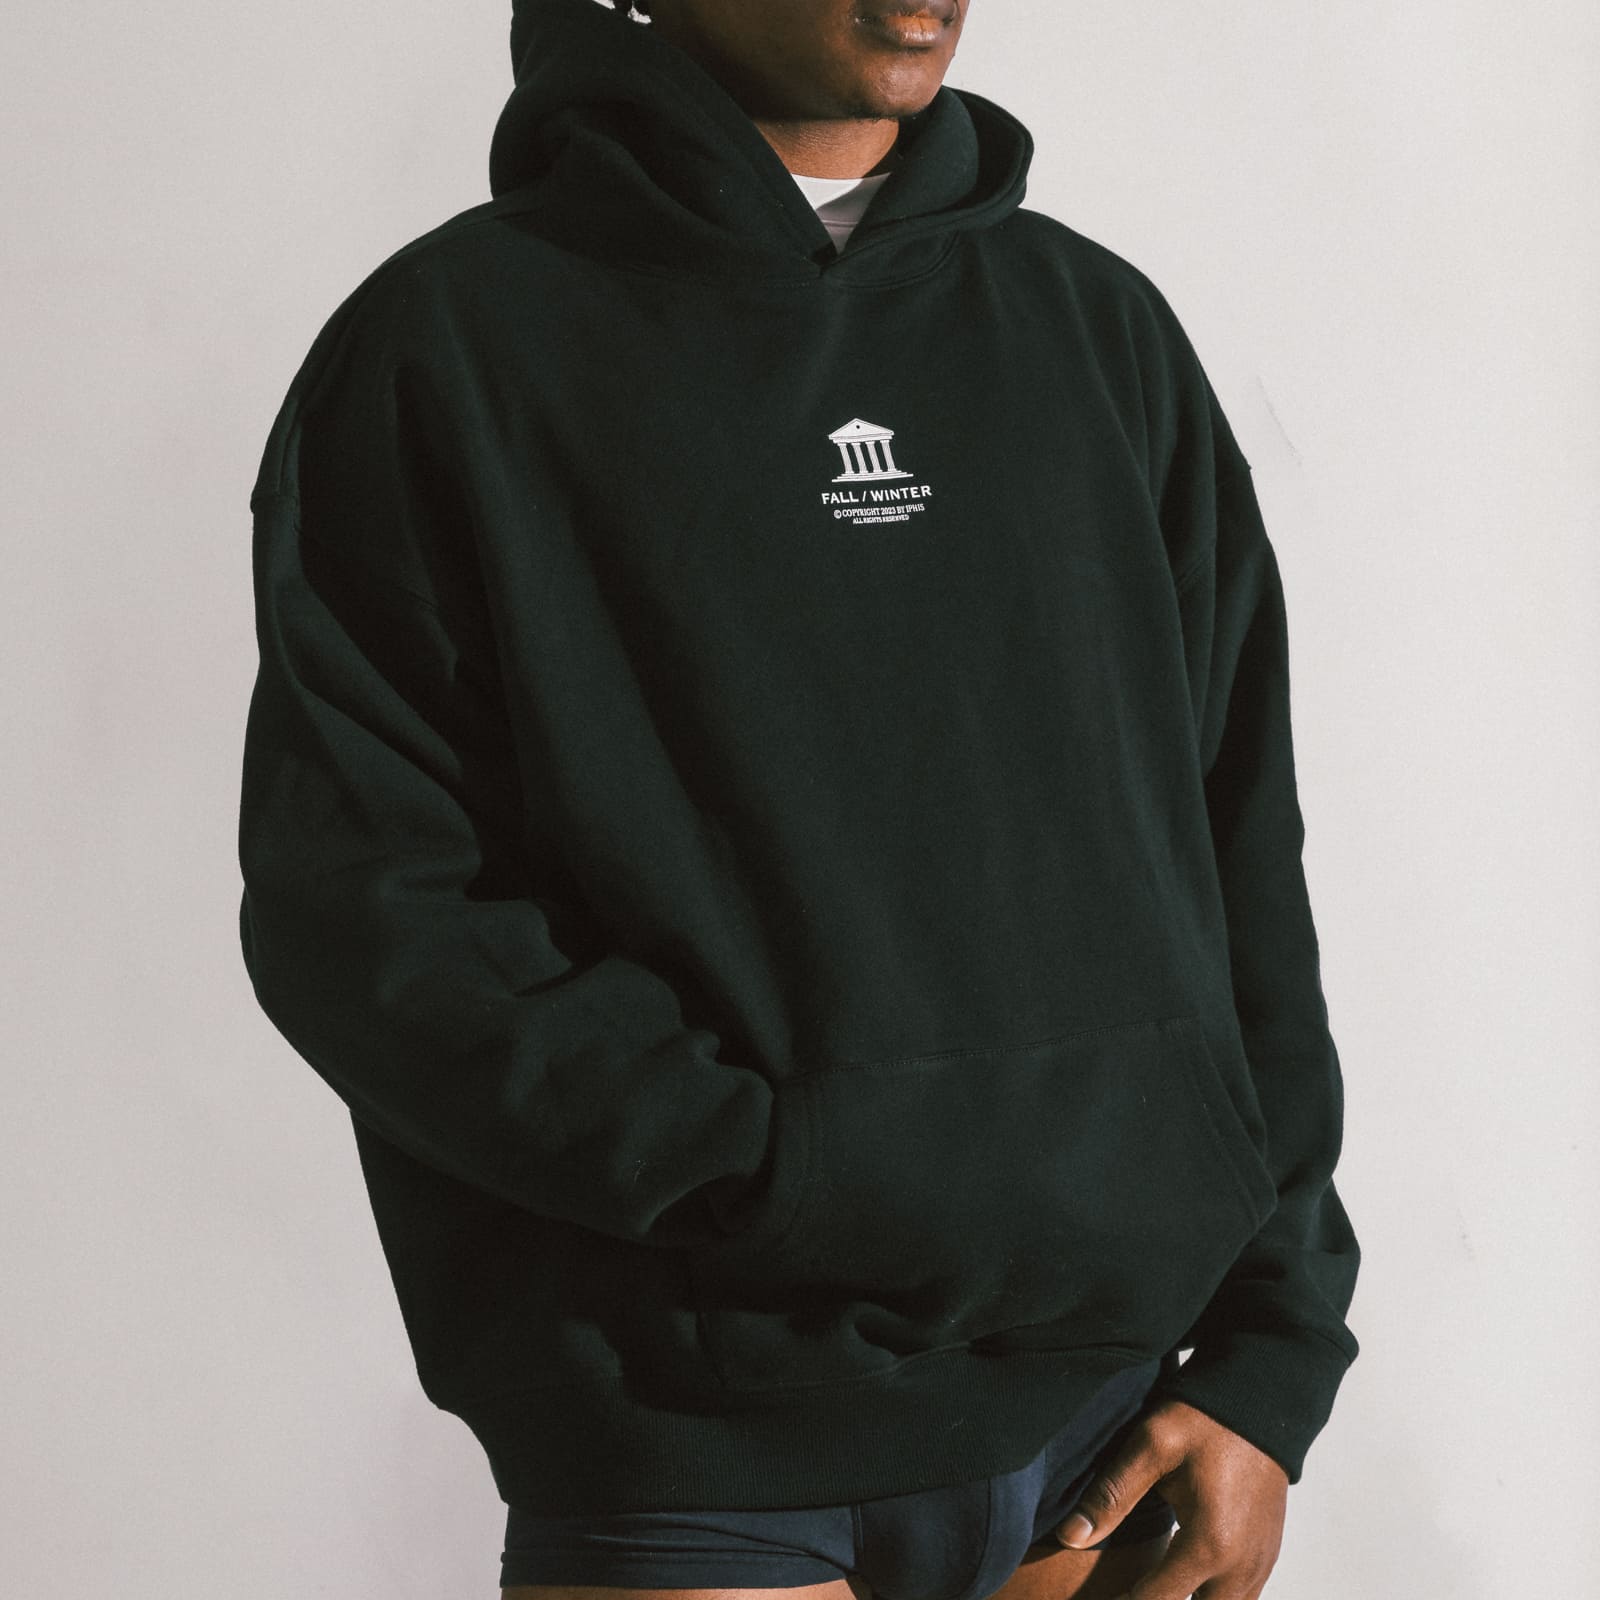 Buy Everyday Fleece Full-Zip Hoodie - Order Hoodies & Sweatshirts online  5000009687 - PINK US